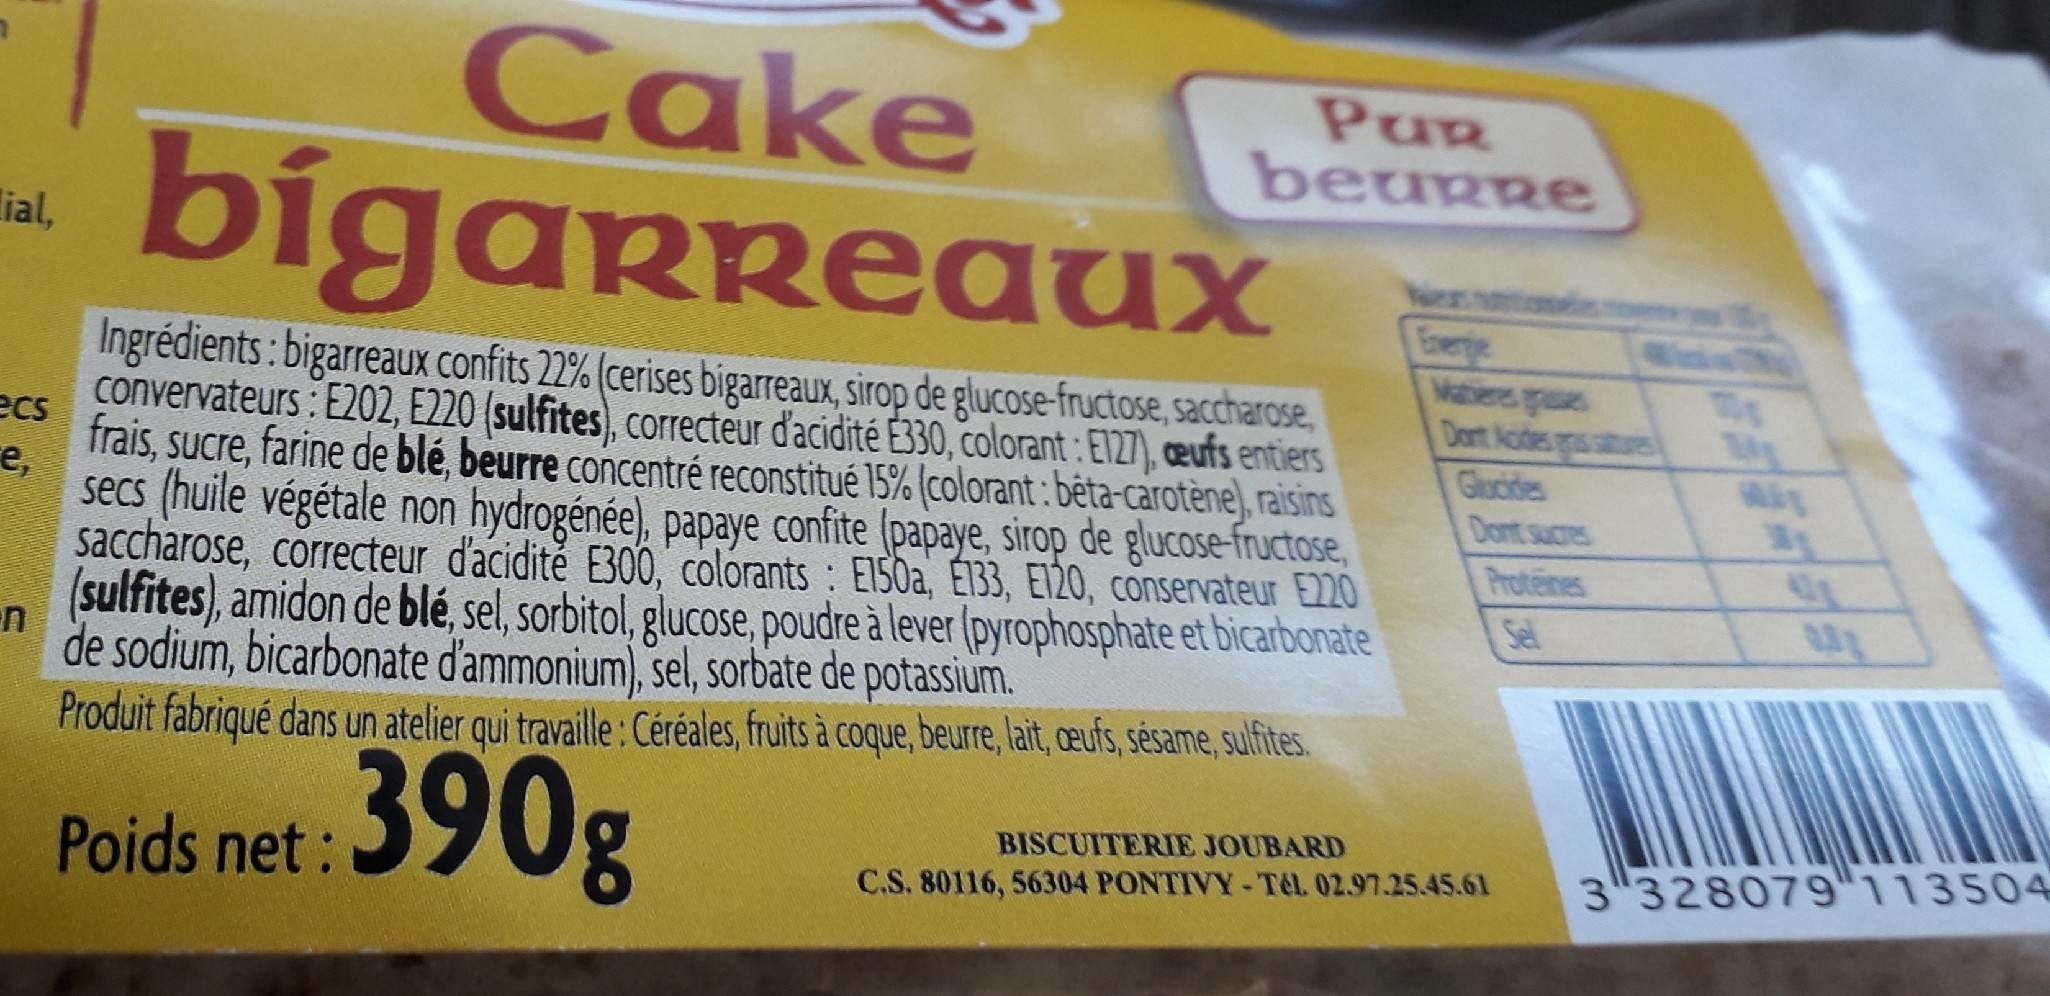 Cake bigarreaux - Zutaten - fr